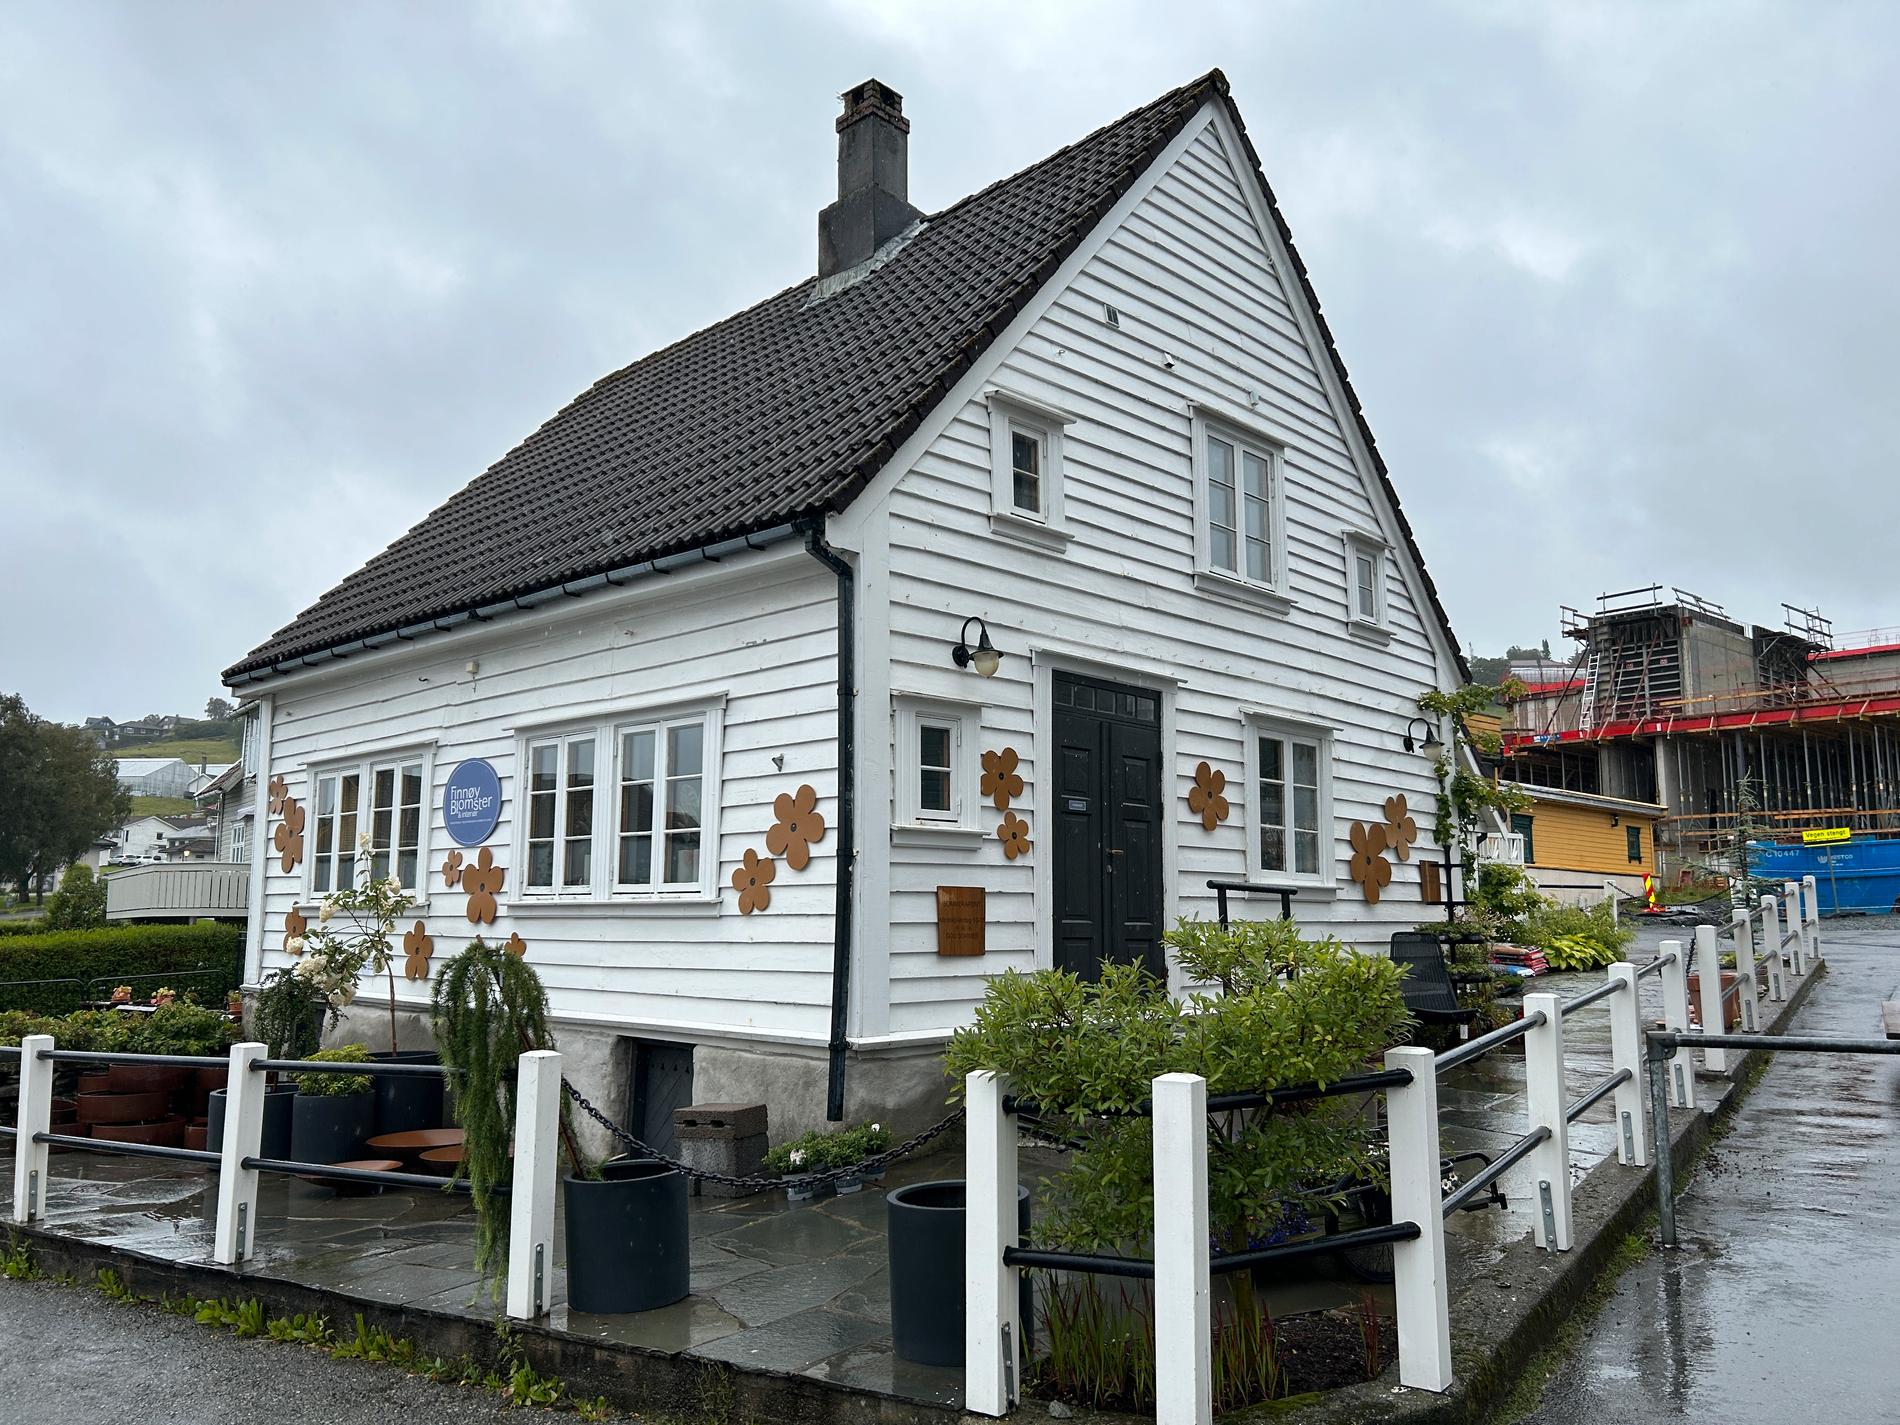 Judabergs eldste hus er blomsterbutikken, der du i dag blir ønskt velkomen av nokre fine og kjekke jenter, skriv Harald Få.